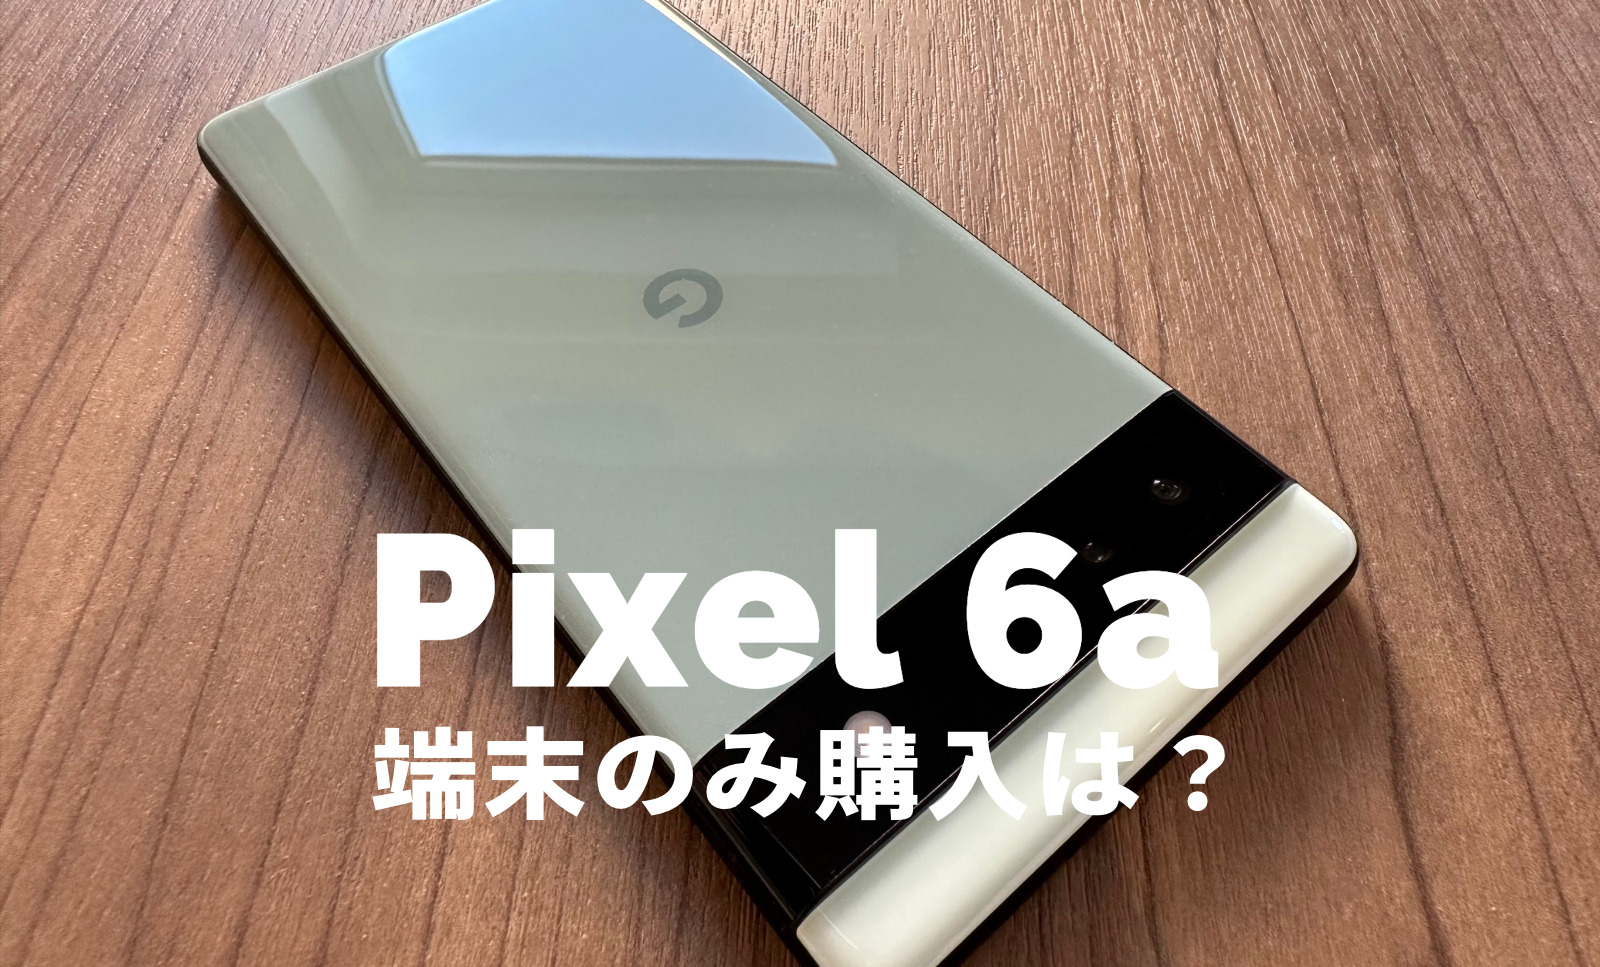 Google Pixel 6aを端末のみ購入&回線契約なしで本体のみ欲しい場合は？【ピクセル6a】のサムネイル画像